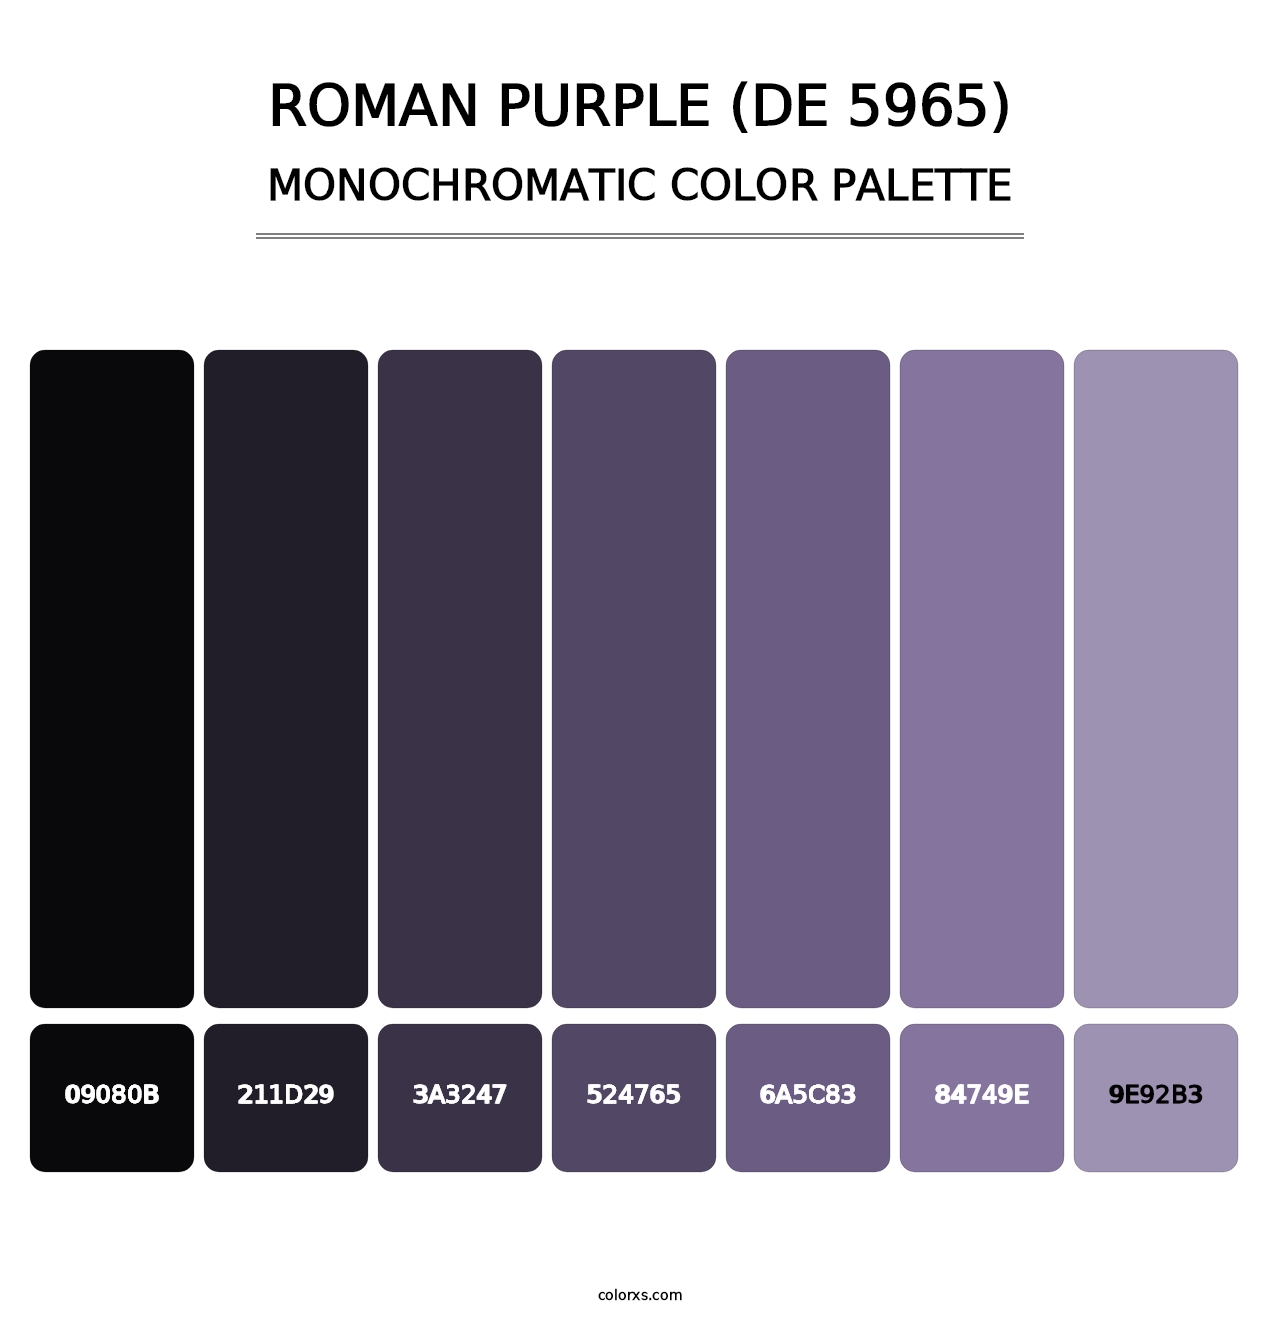 Roman Purple (DE 5965) - Monochromatic Color Palette